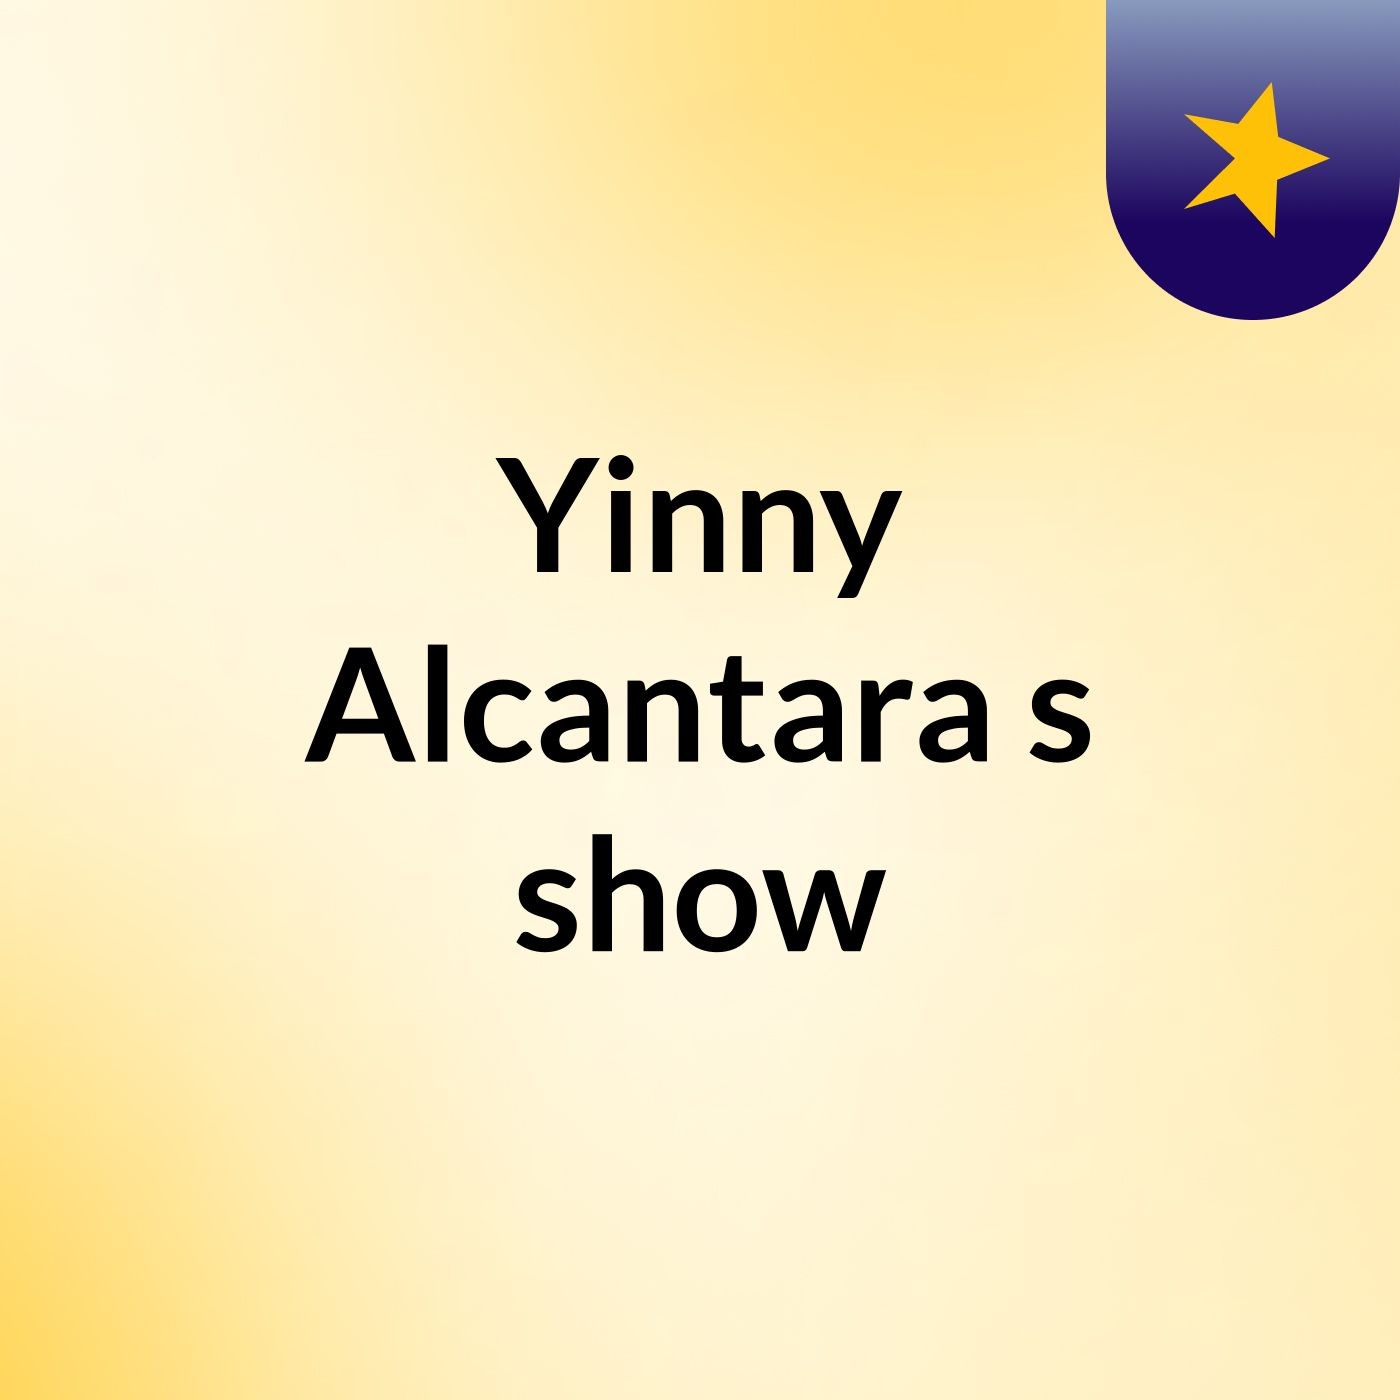 Yinny Alcantara's show